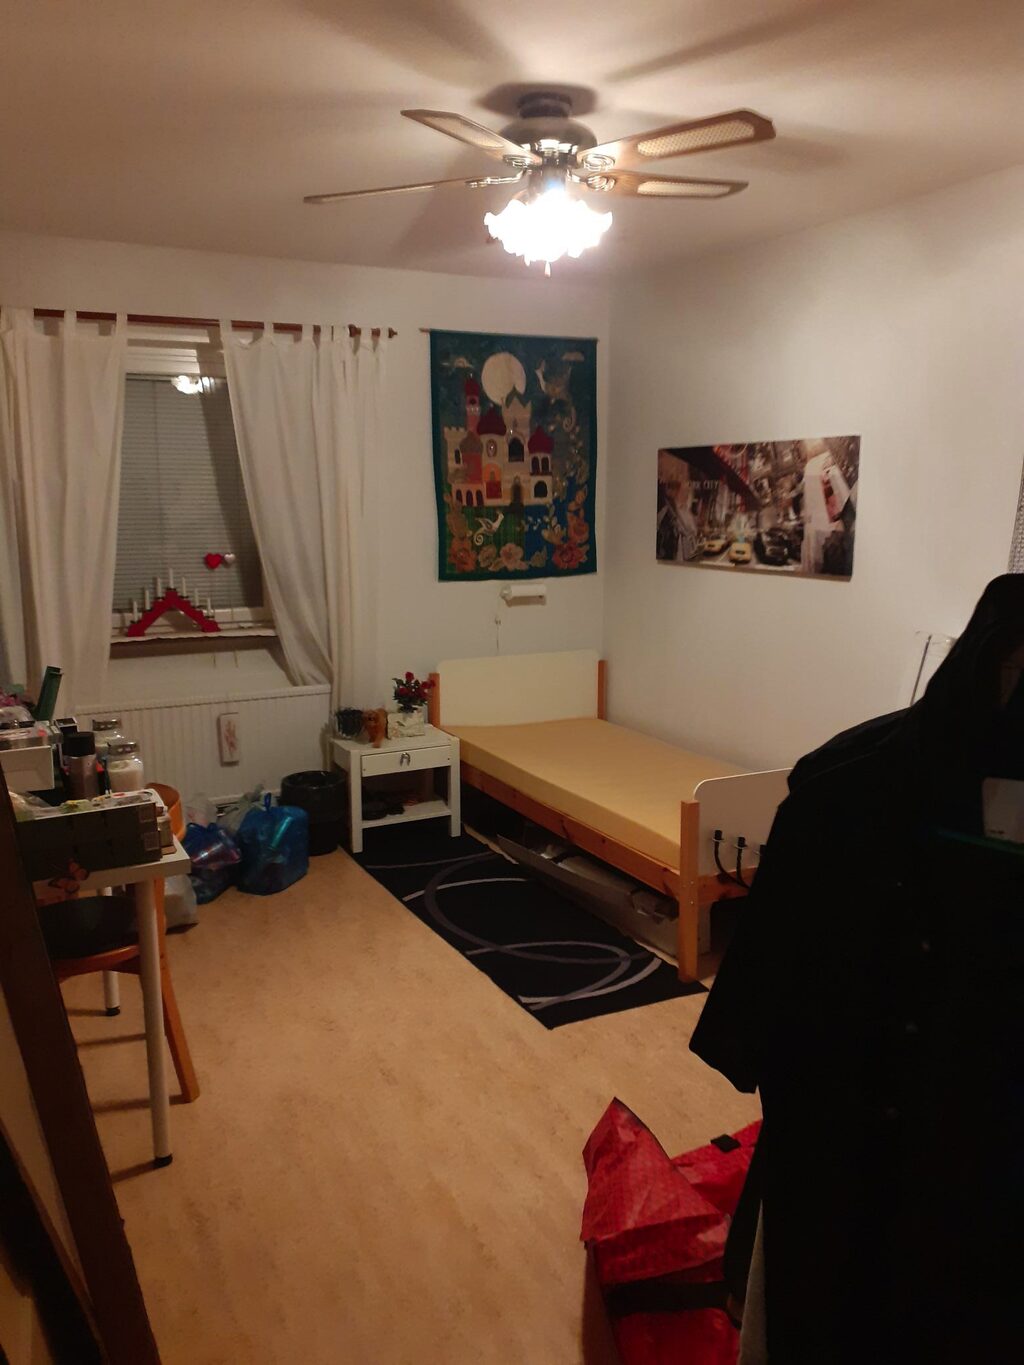 Lägenhetsbyte - Kinnaredsgränd 55, 125 72 Älvsjö